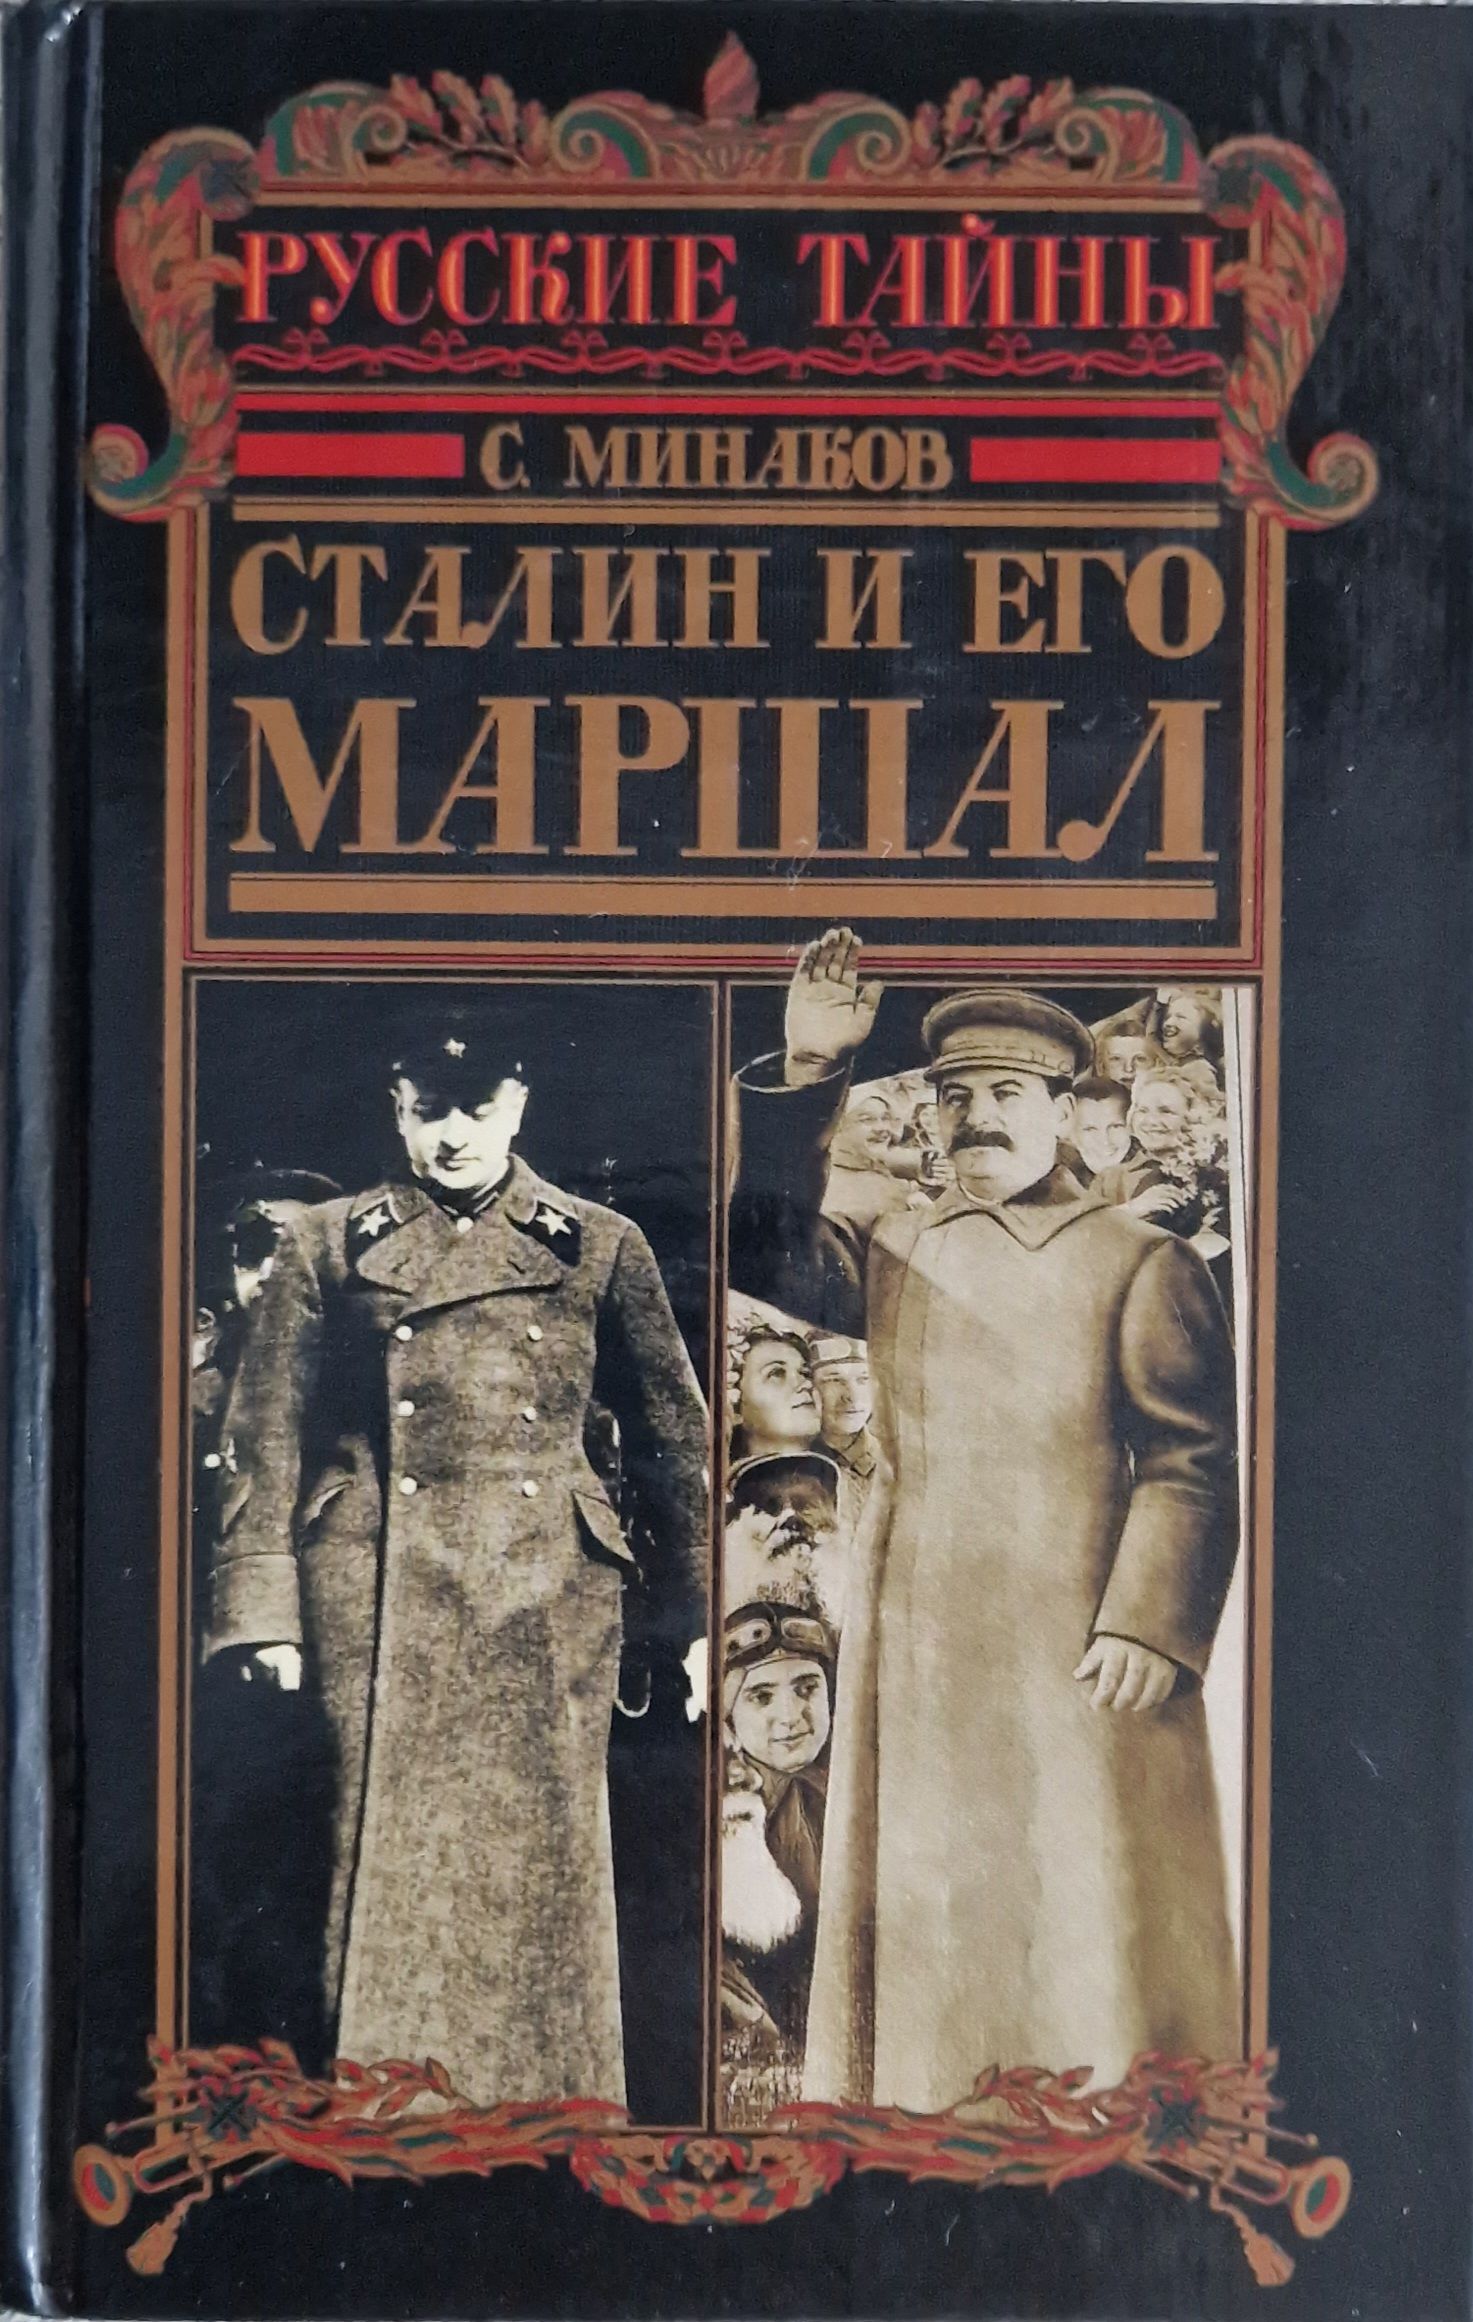 Сталинские книги купить. Сталин книга. Книга про Сталина. Сталин и его Маршал. Маршалы Сталина книга.